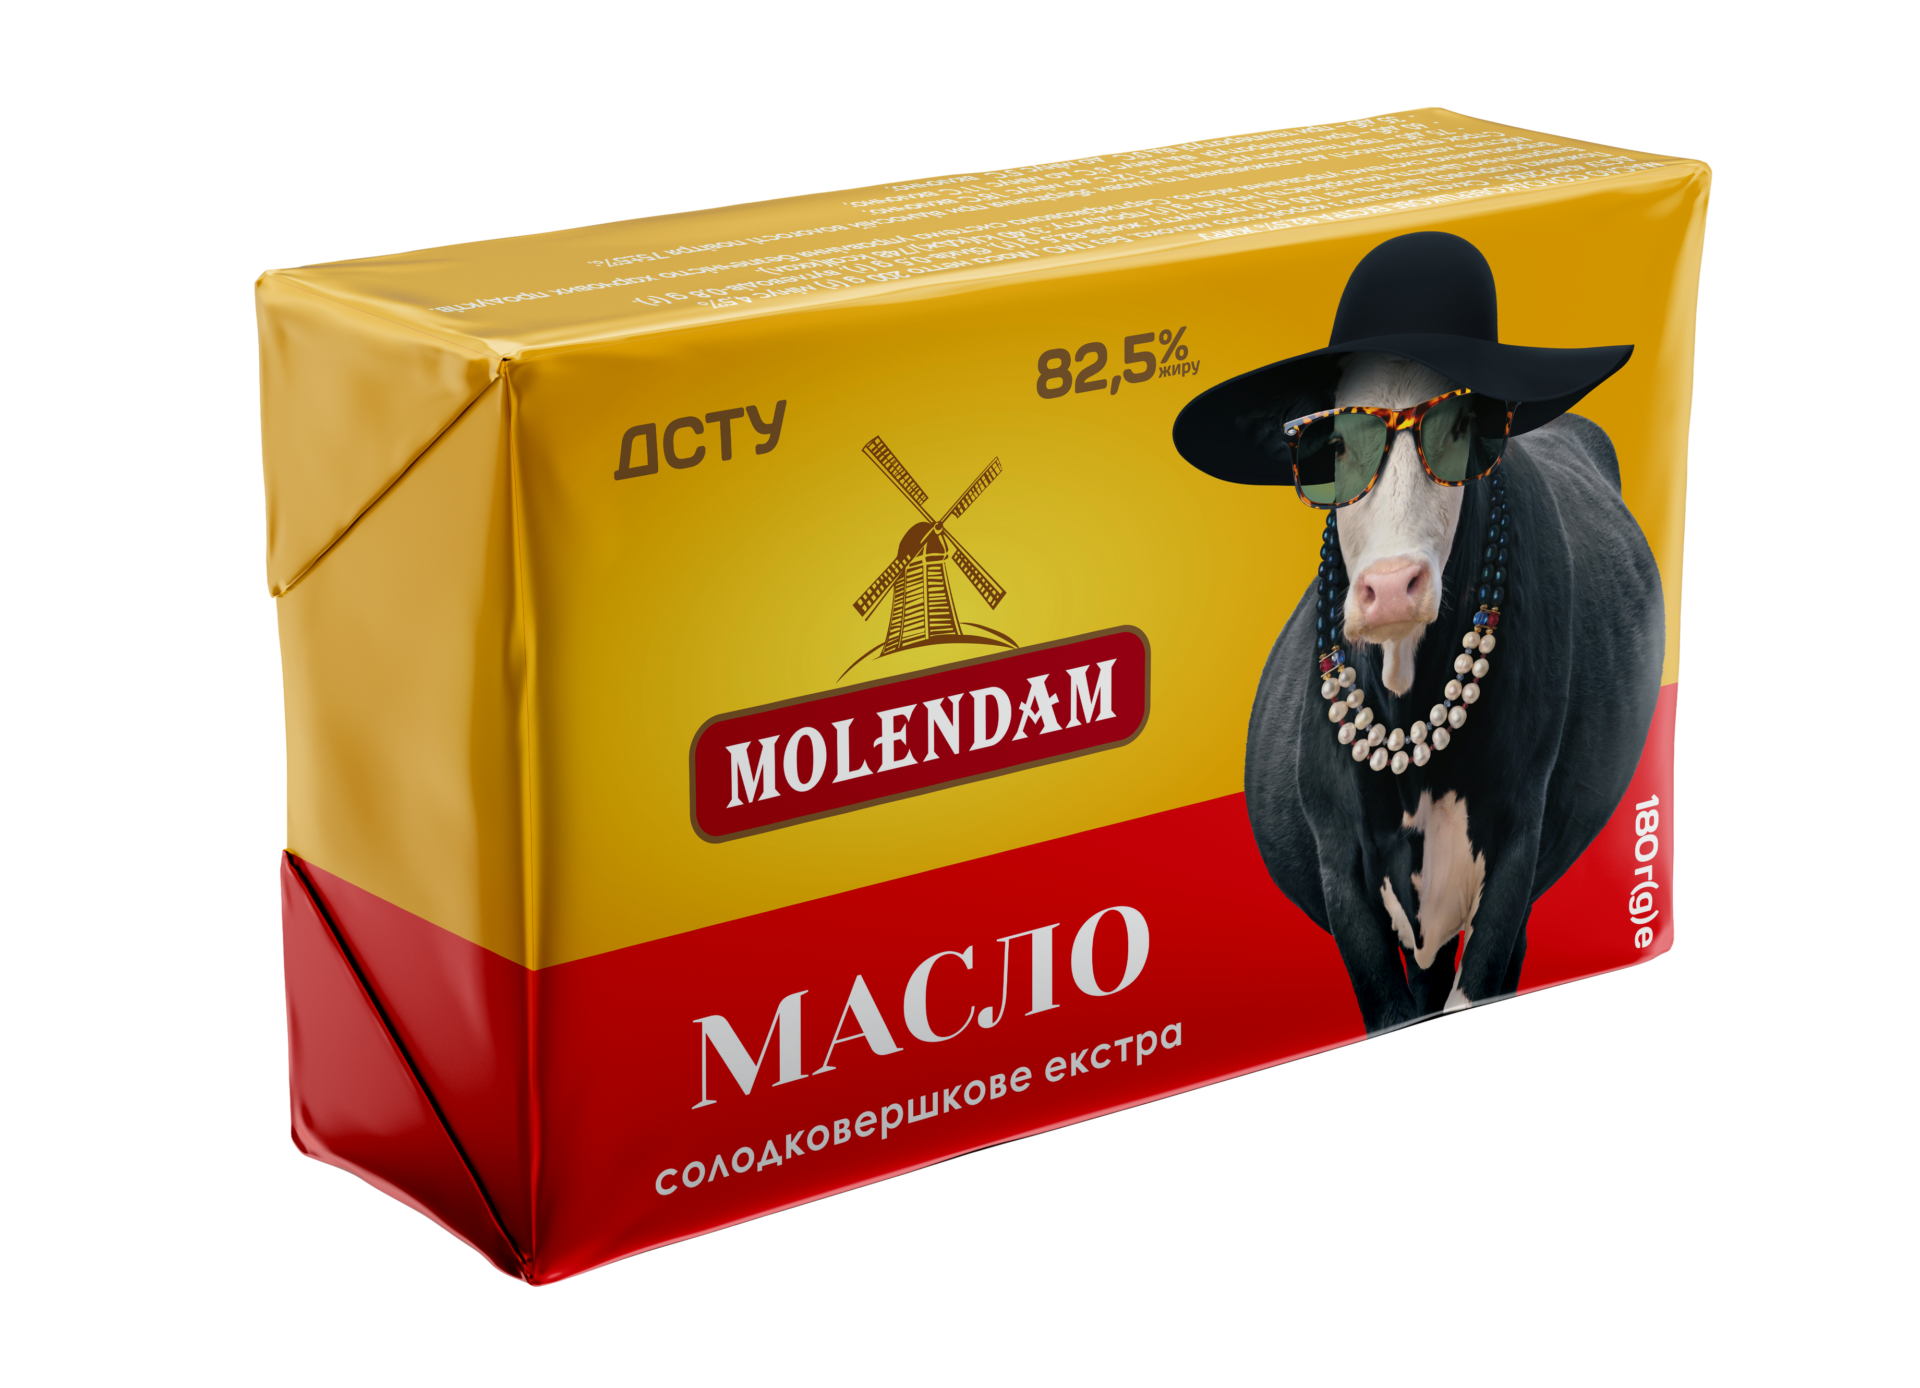 Масло ТМ Молендам 82,5%